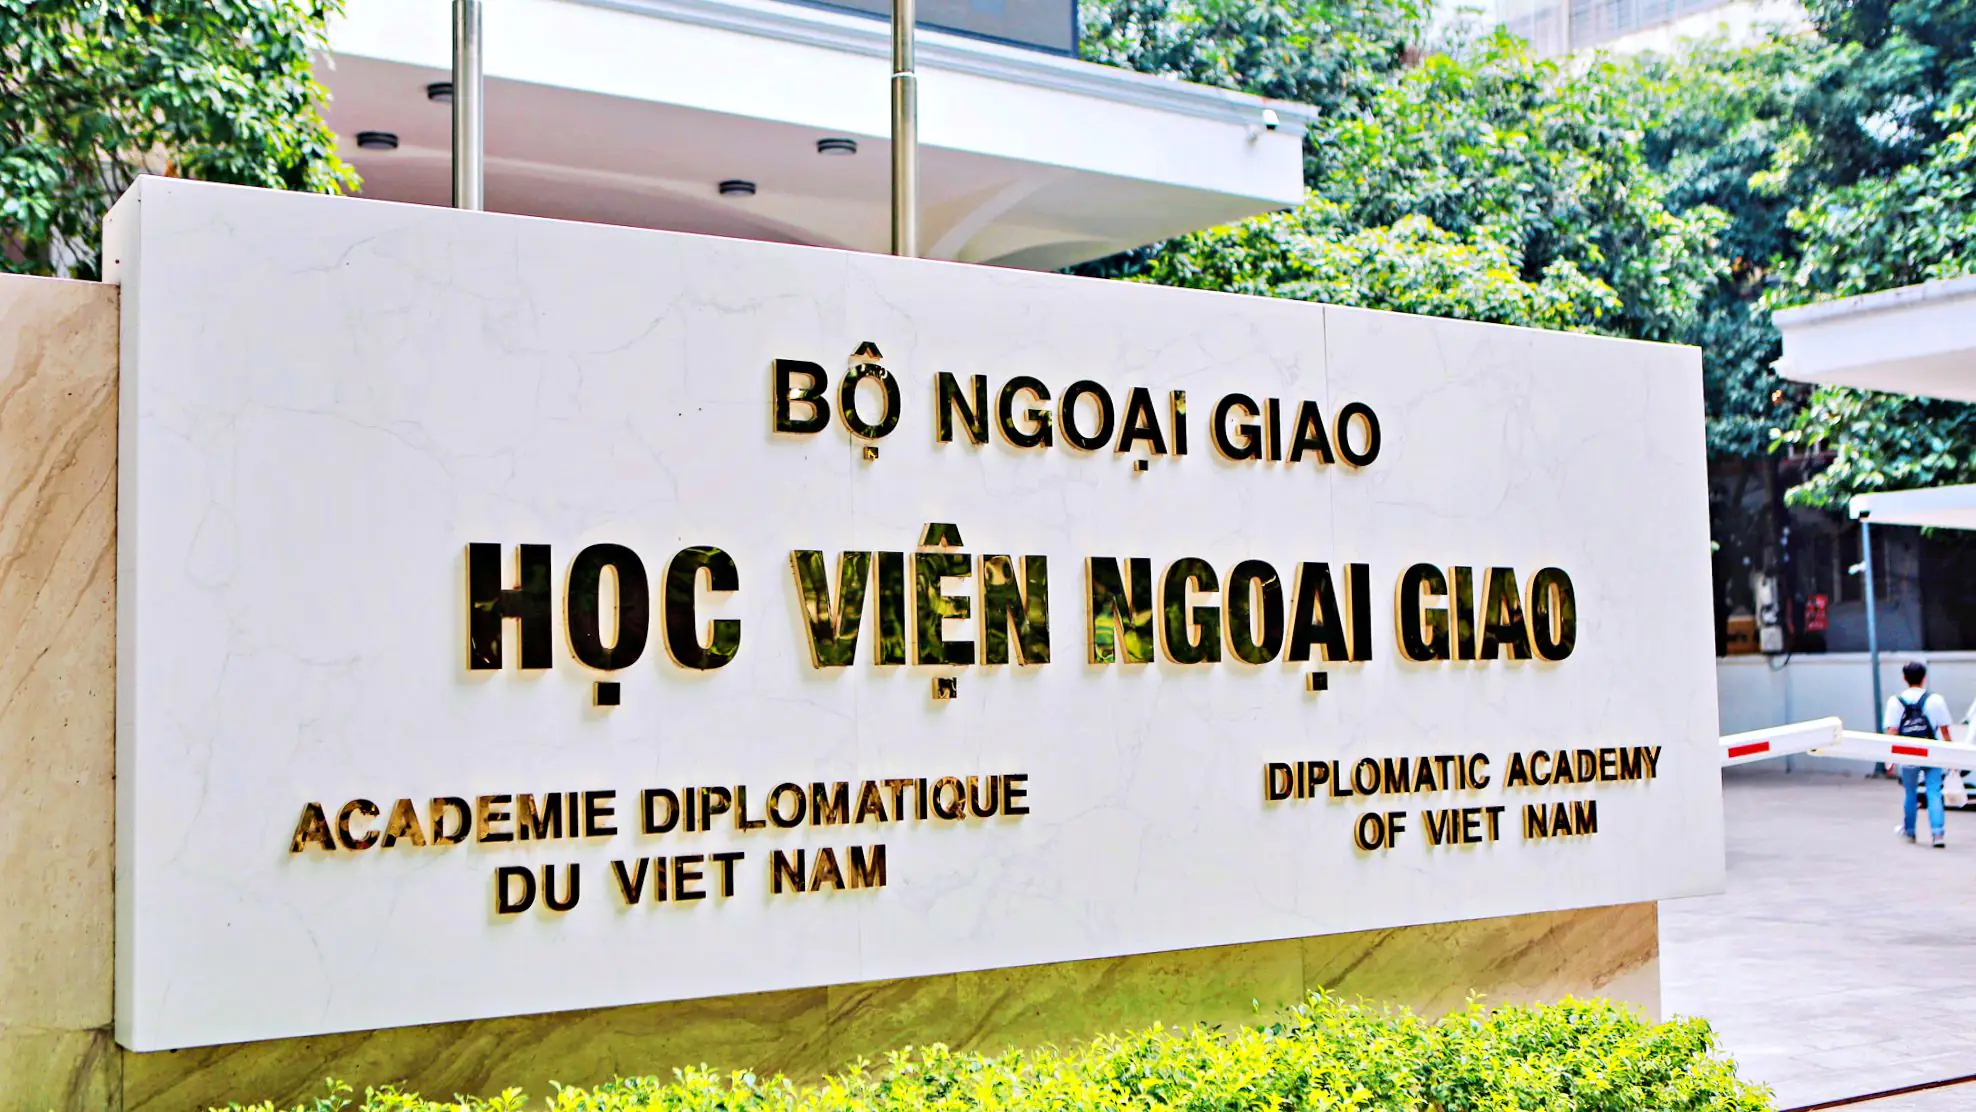 Học viện Ngoại giao là trường học thuộc hệ thống giáo dục quốc dân trực thuộc Bộ Ngoại giao tại Việt Nam.